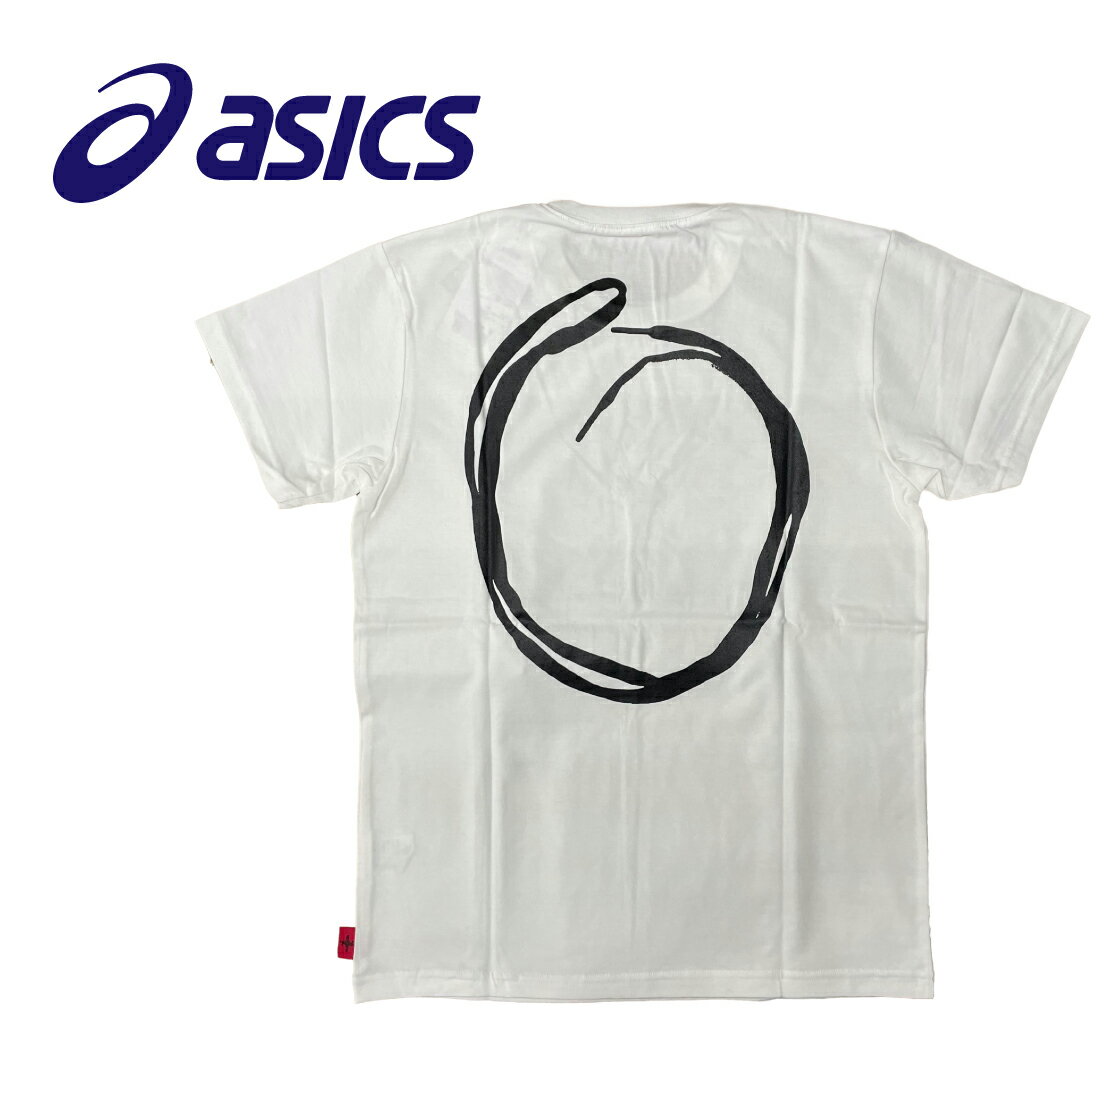 アシックス 【ユニセックス】ランニング Tシャツ [XTR974-0190] ホワイト×ブラック ランニング ジョギング ウォーキング 陸上